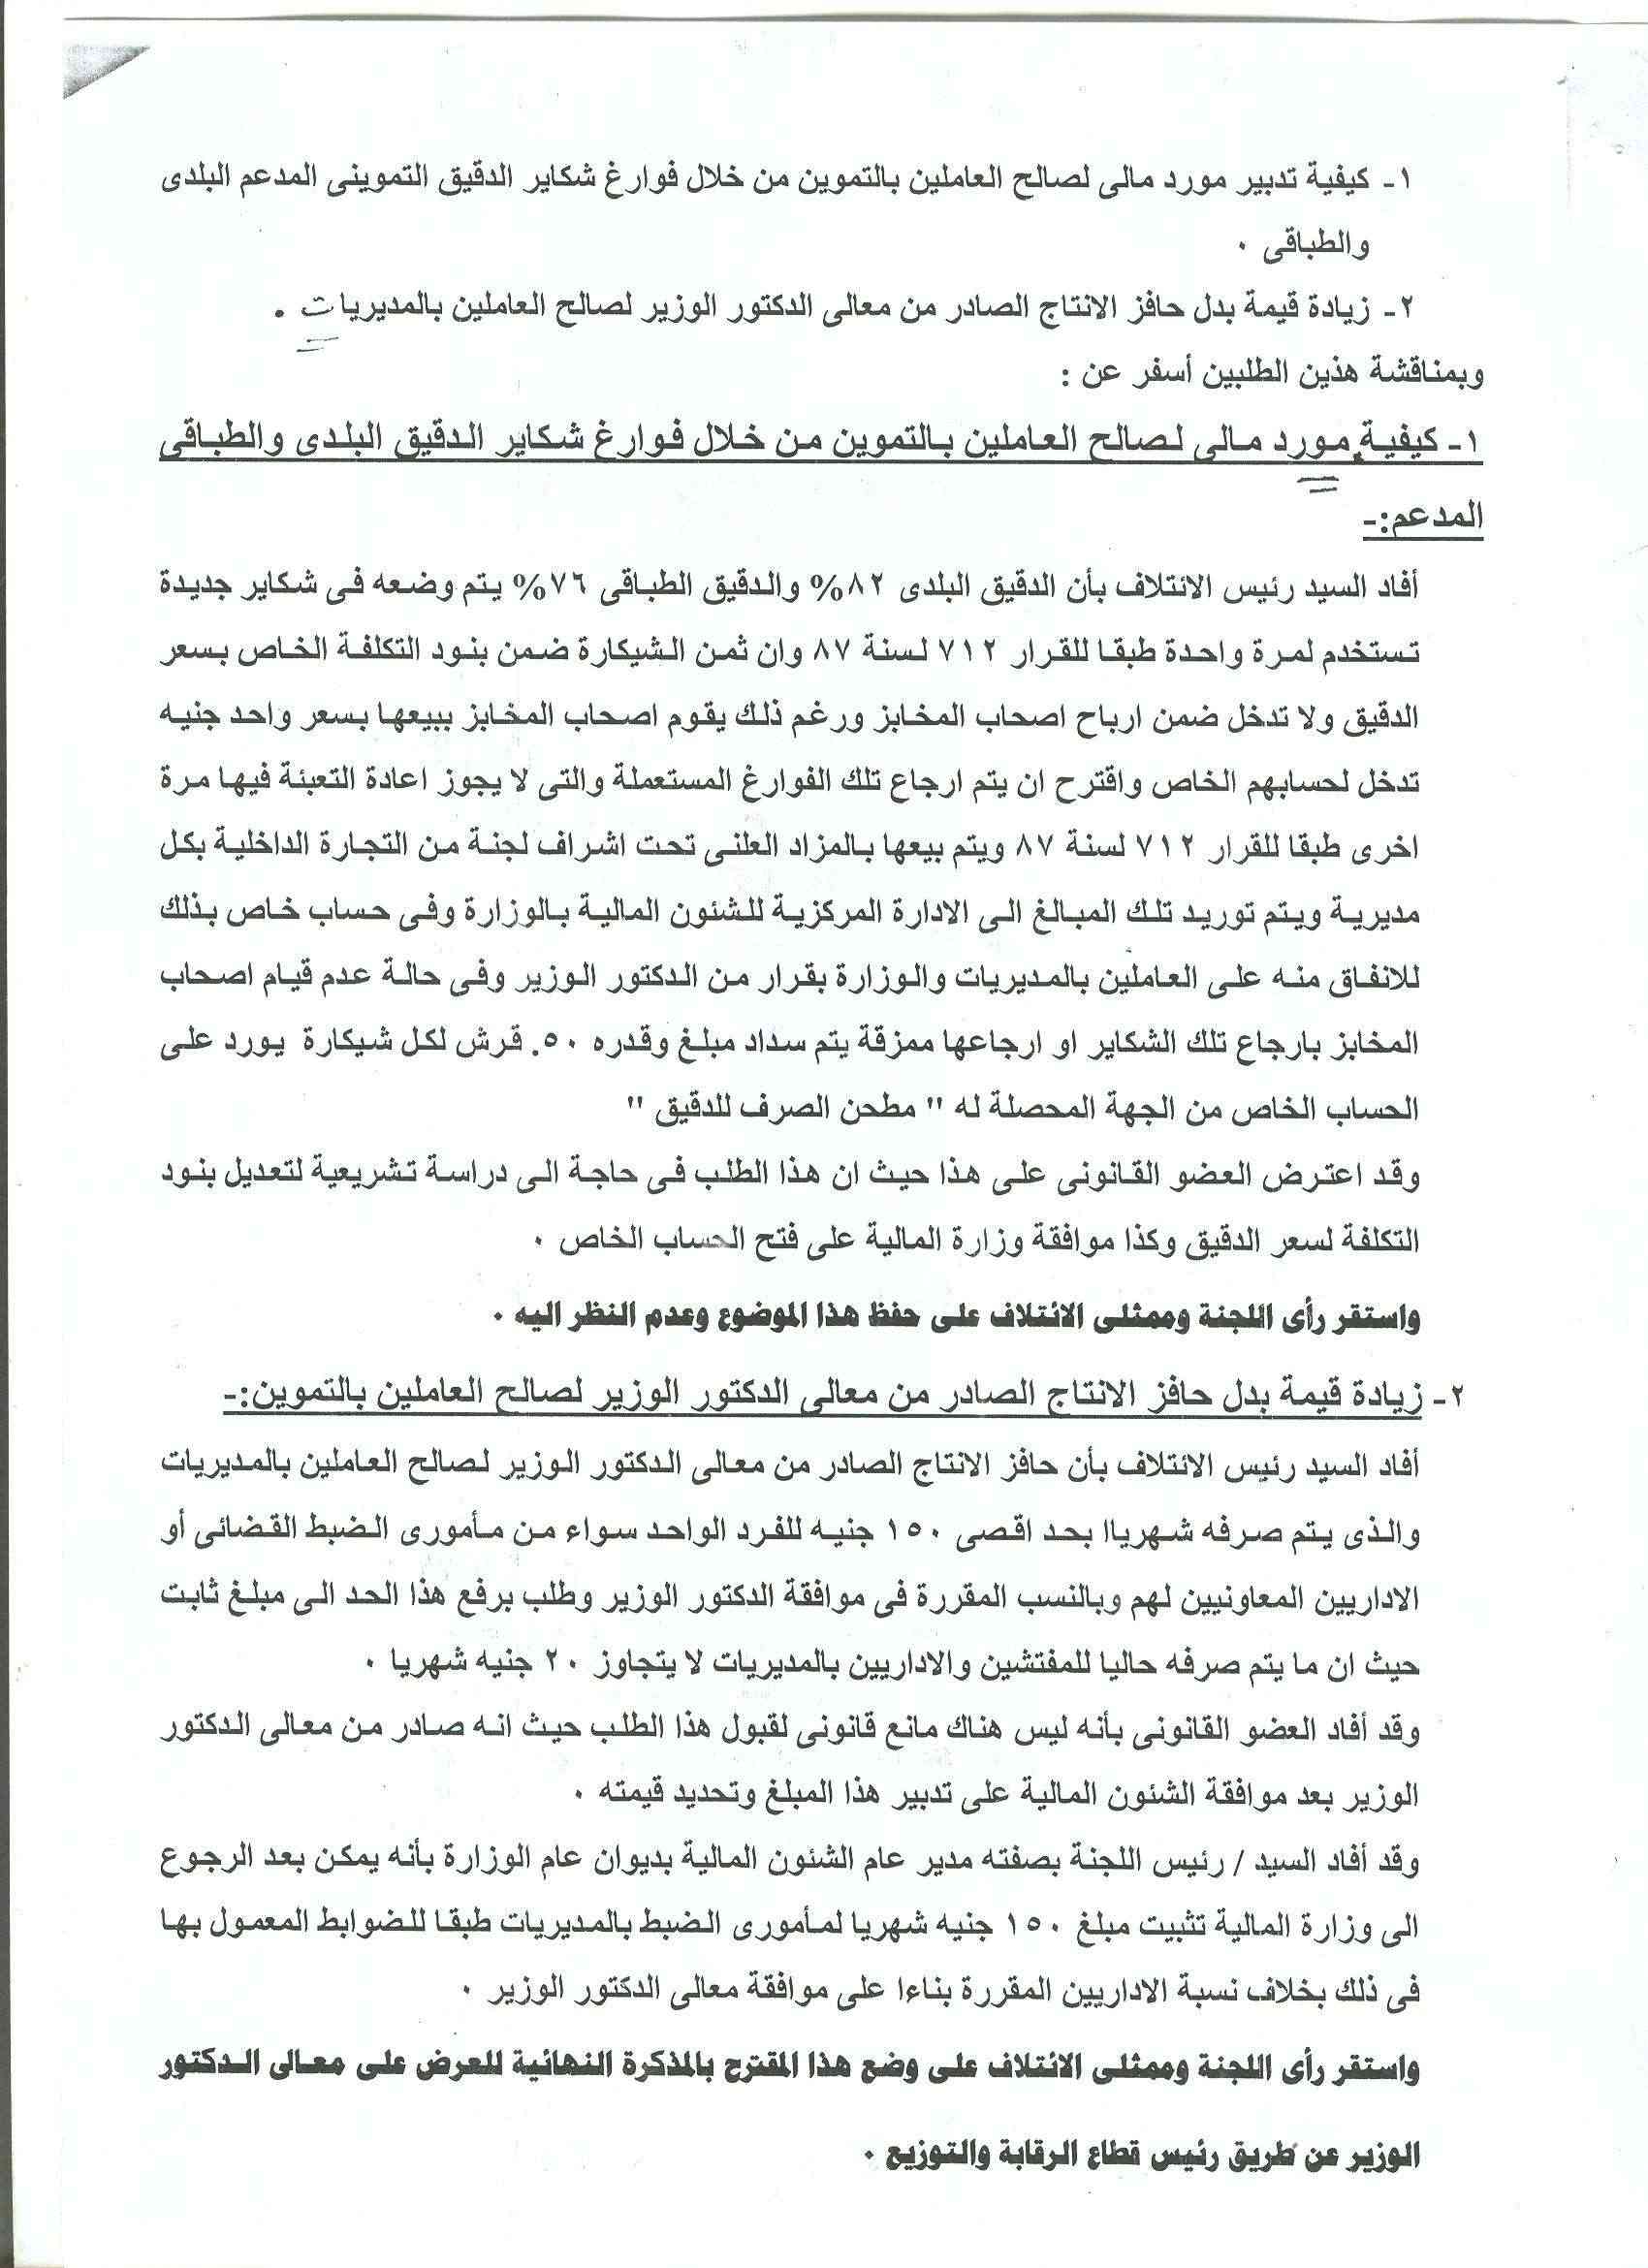 أعمال لجنة الإئتلاف العام للعاملين بتموين مصر بالوزاره خلال شهر فبراير 2012 6-210